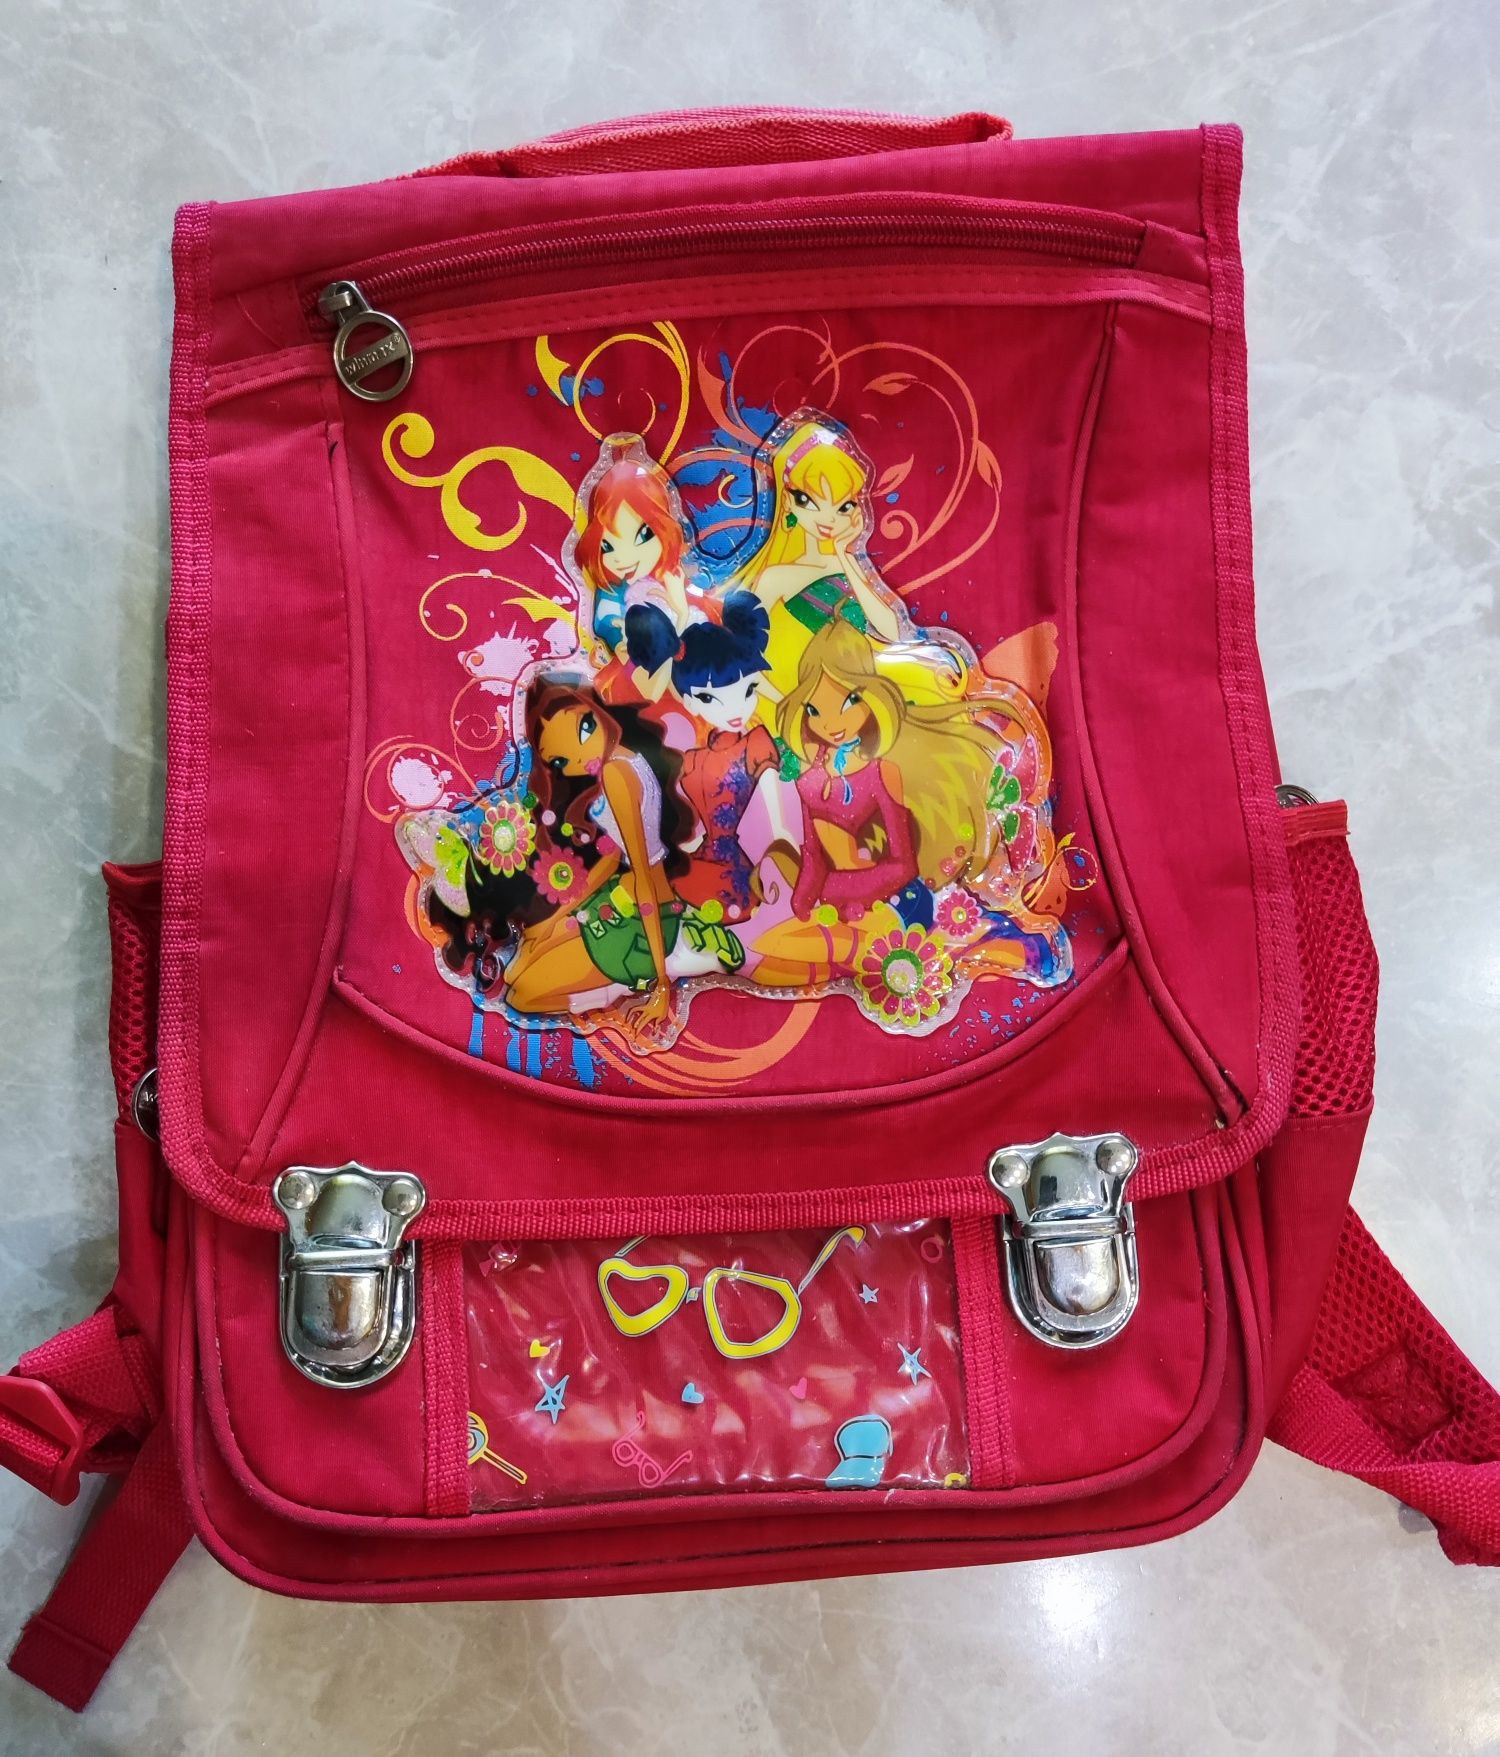 Рюкзак школьный для девочек